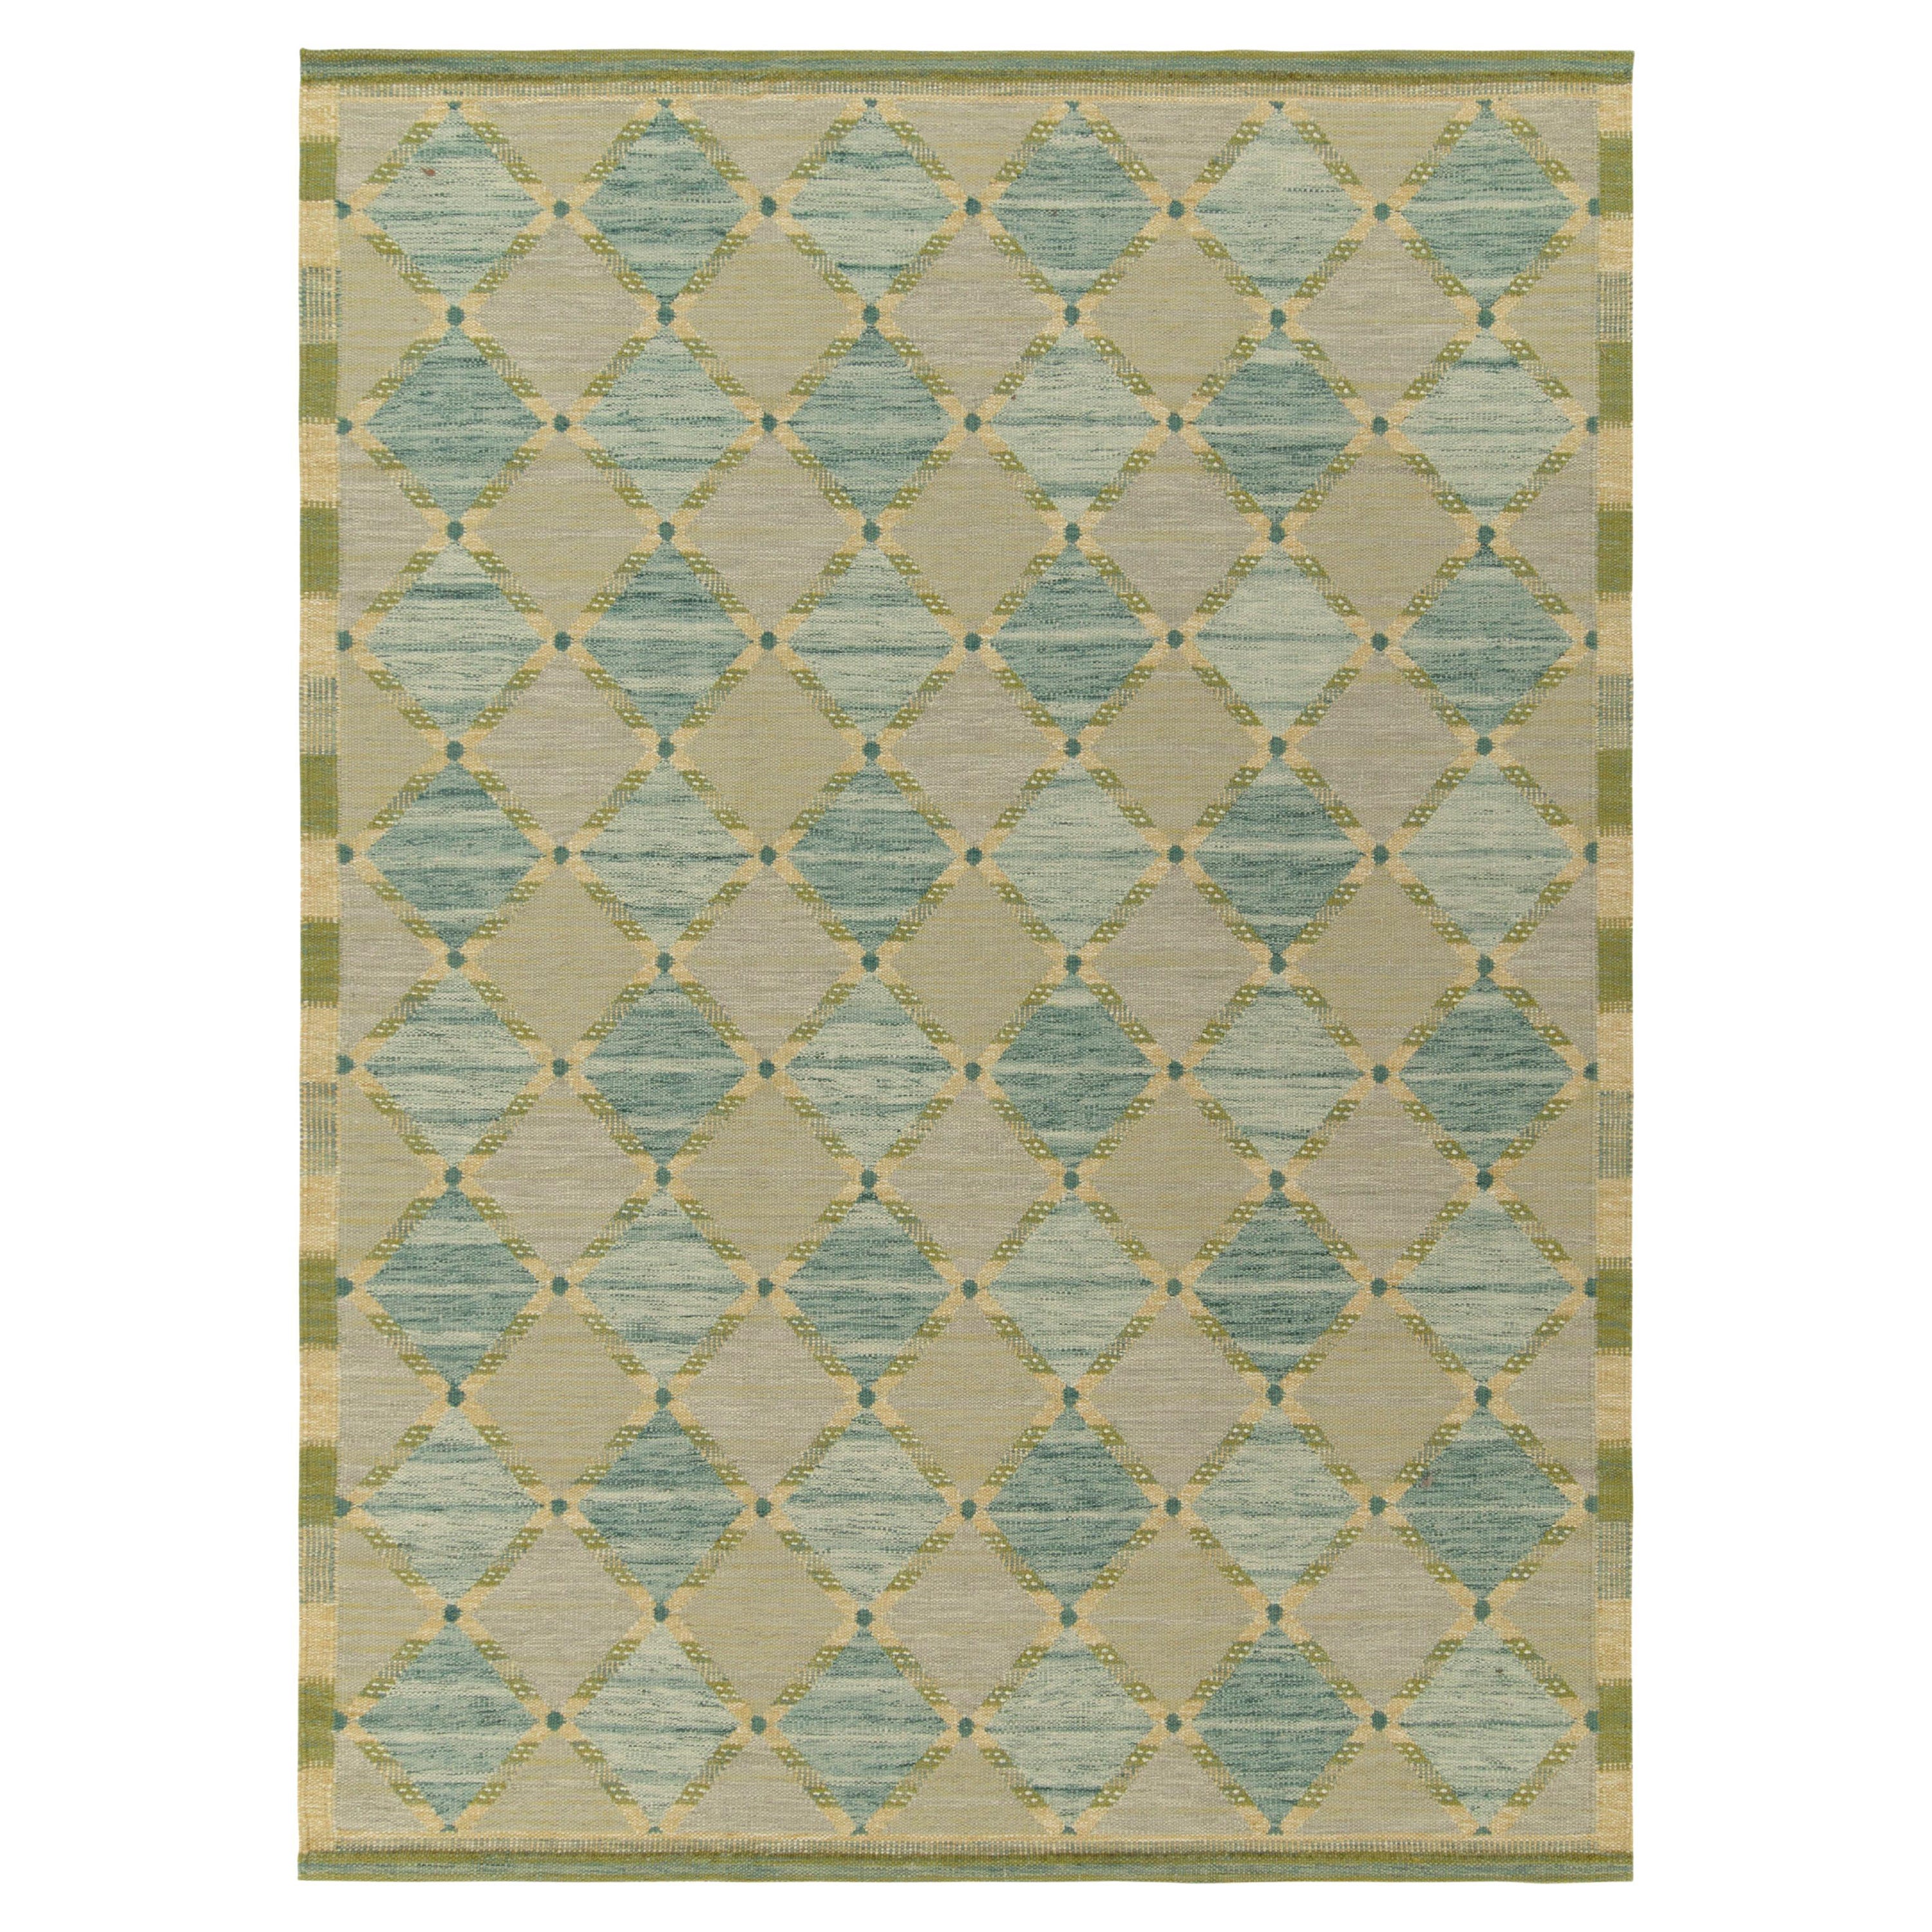 Maßgefertigte Kelim-Teppiche von Teppich & Kilim im skandinavischen Stil mit blauen, grünen Spaliern